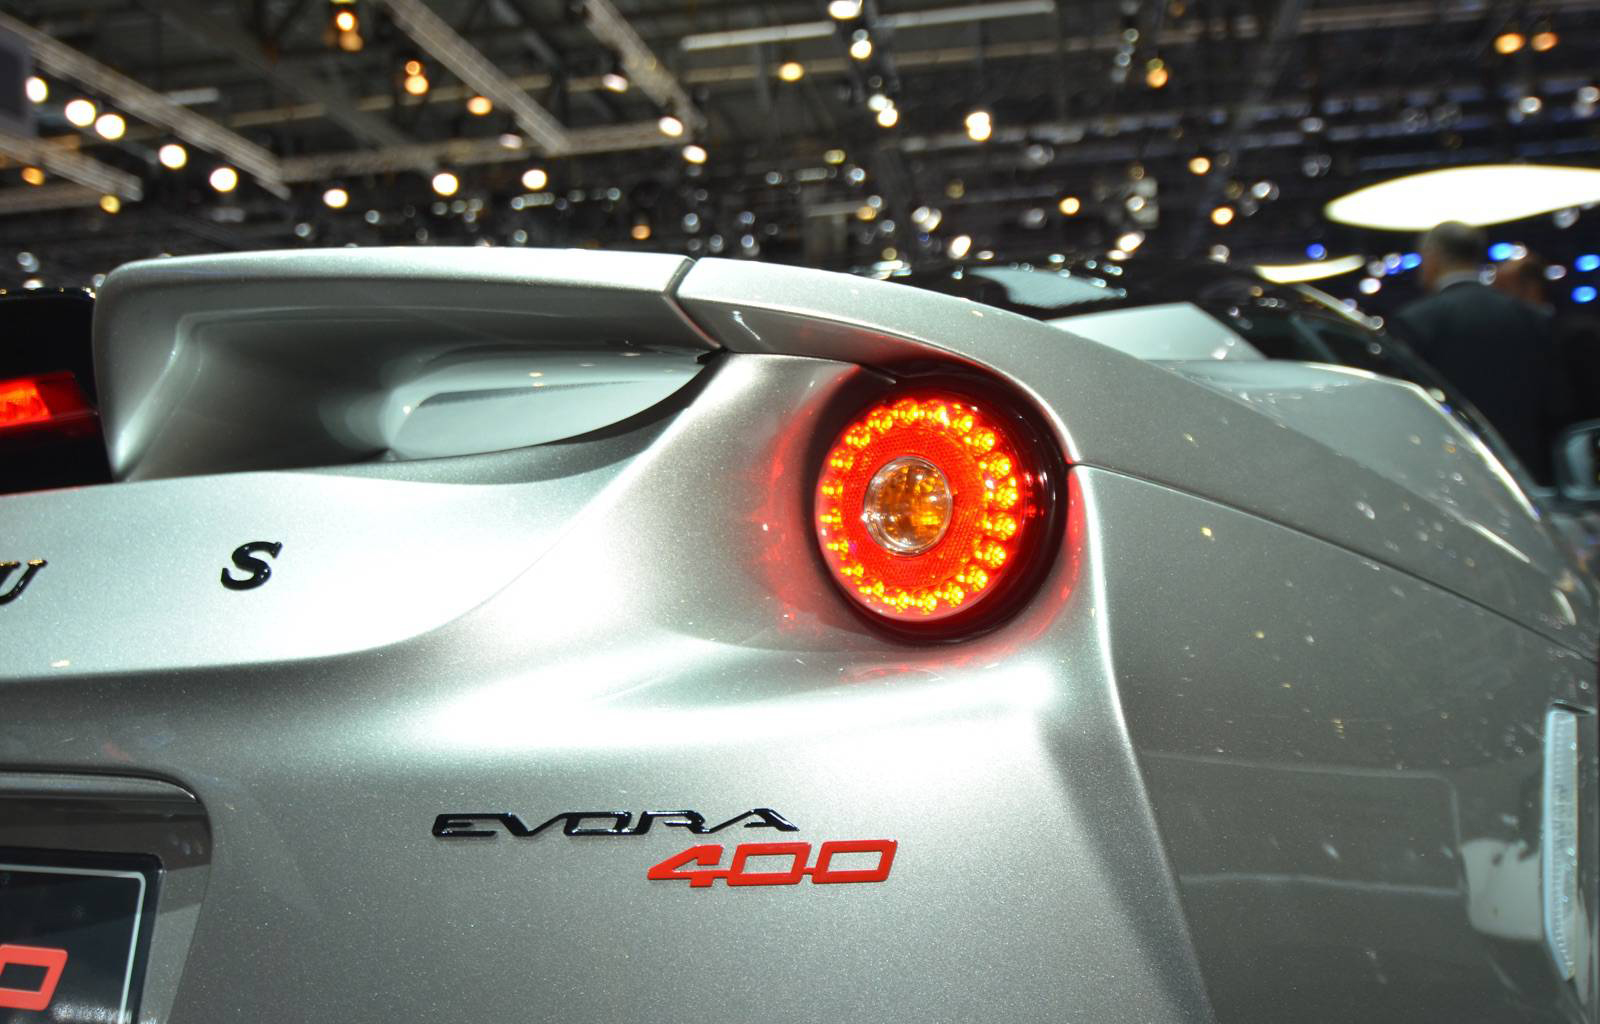 Lotus планирует построить Evora 400 и 4-Eleven